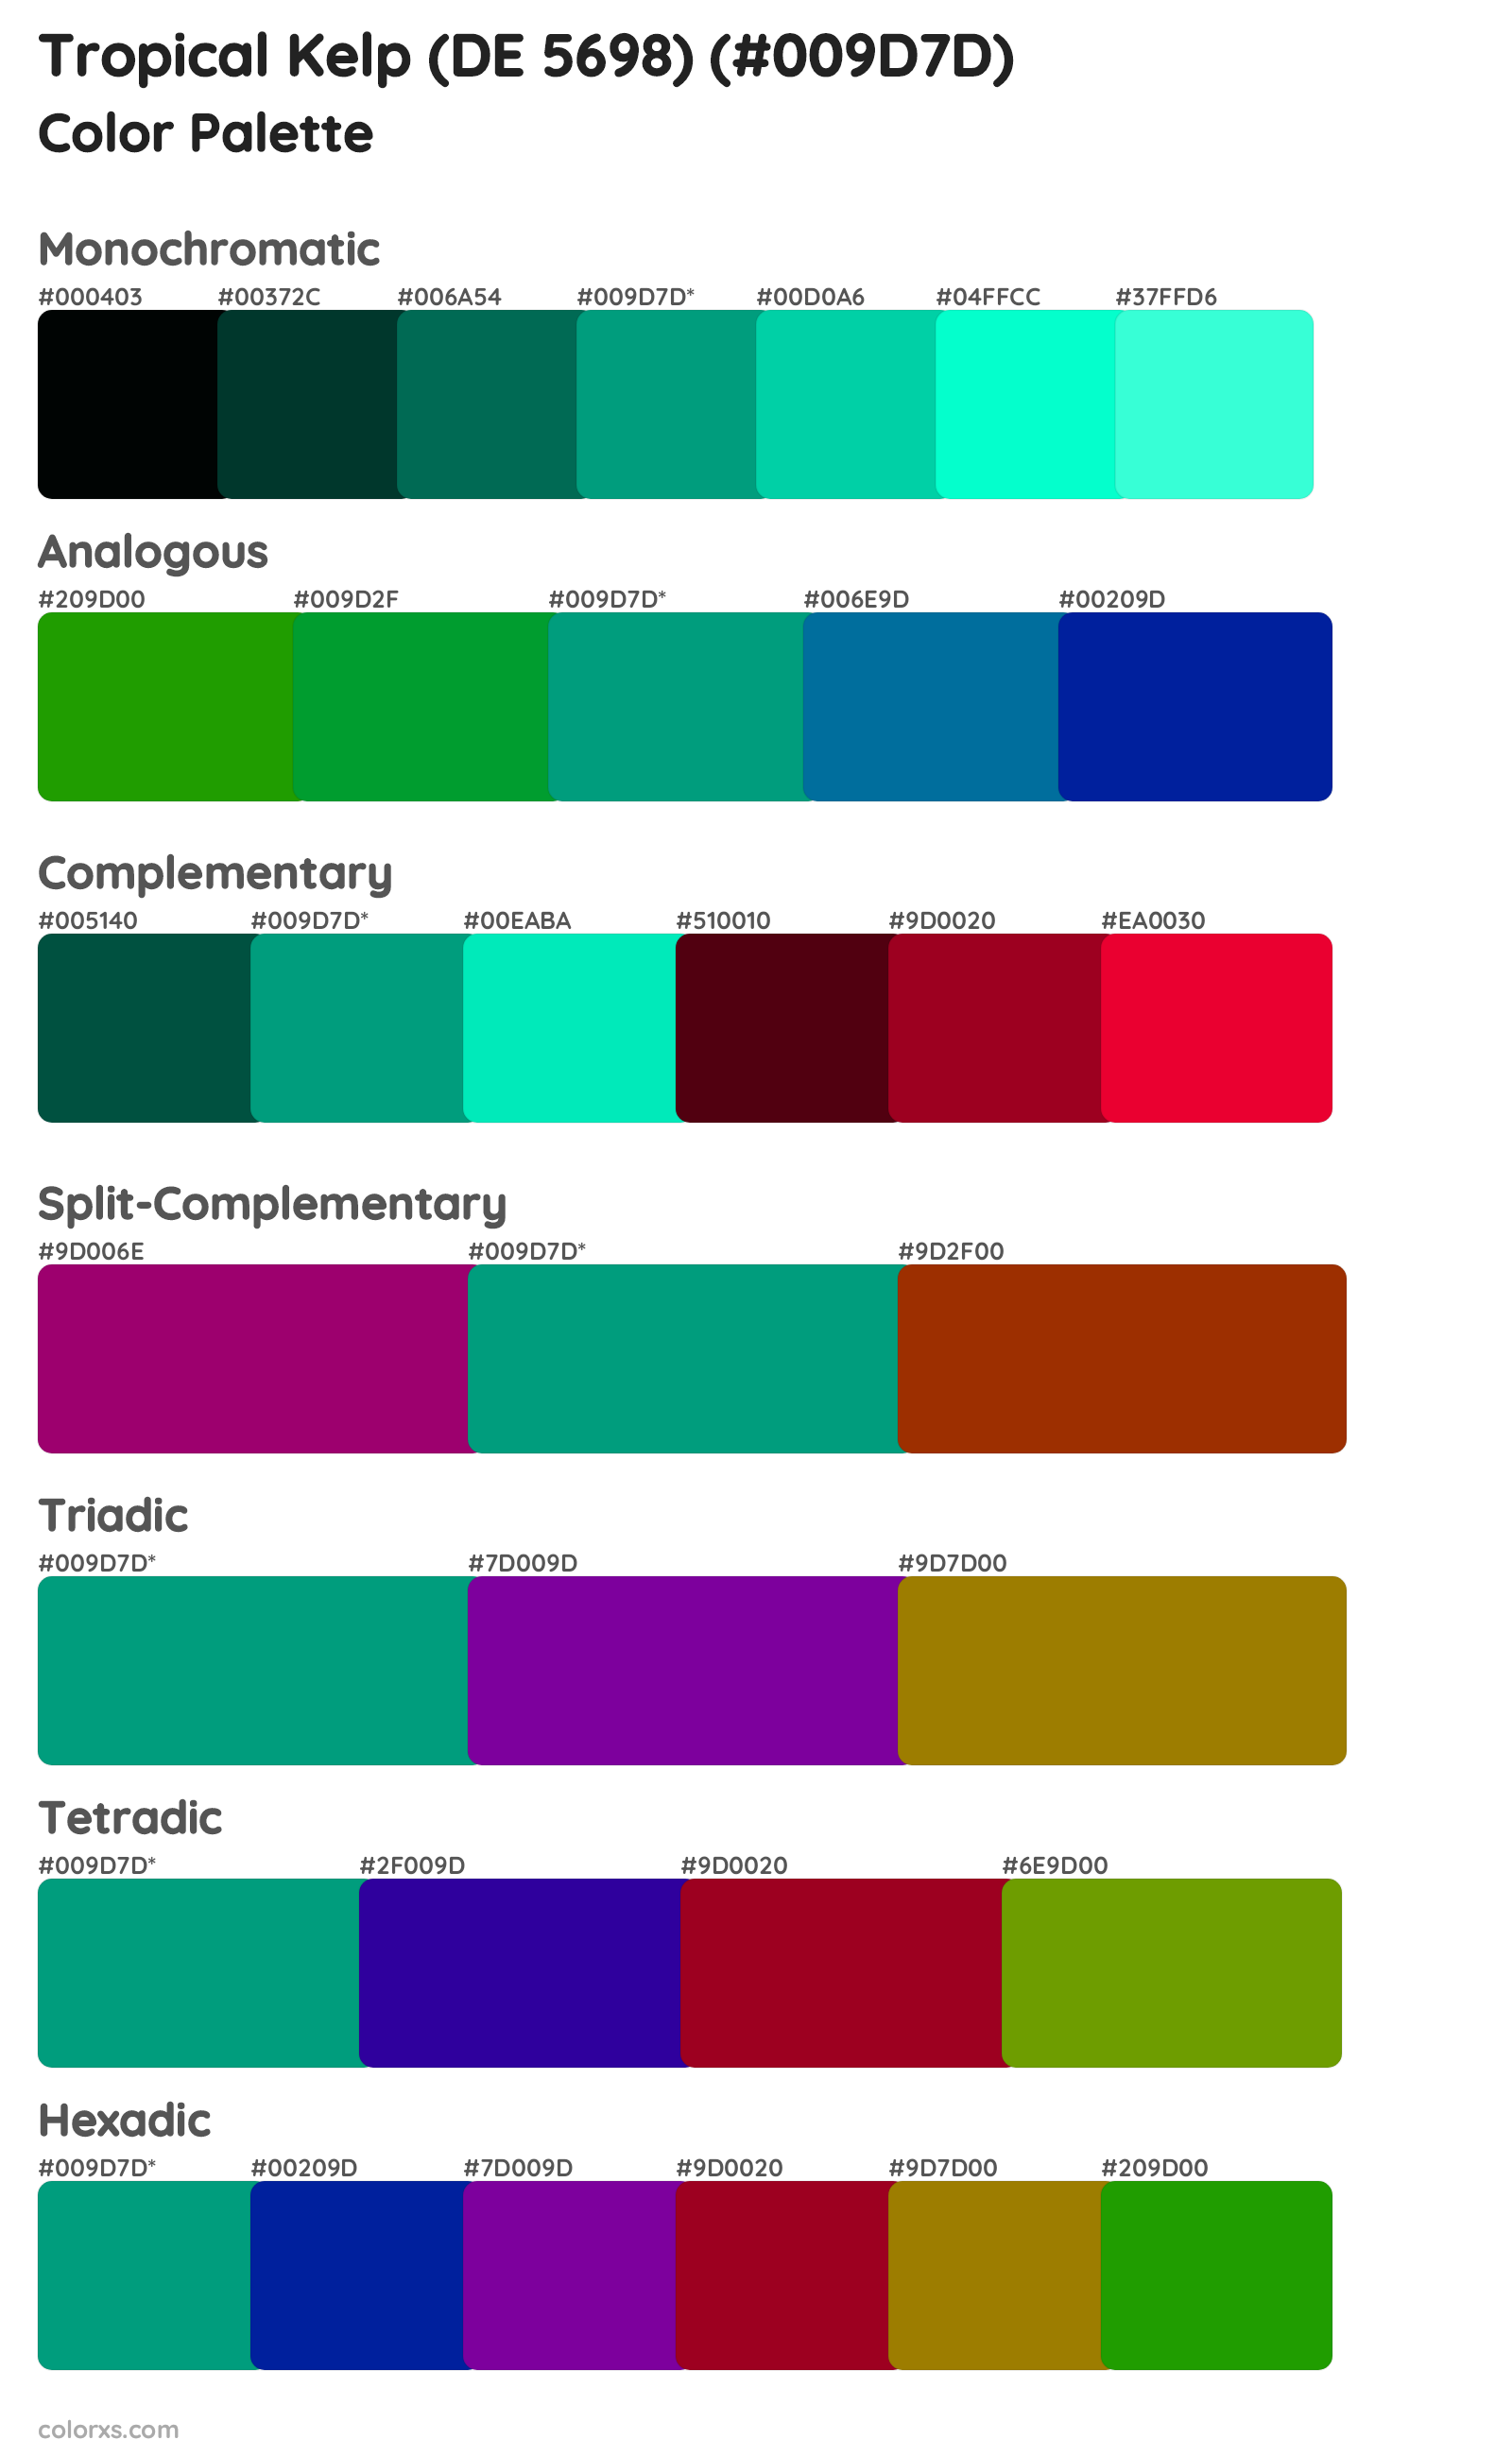 Tropical Kelp (DE 5698) Color Scheme Palettes